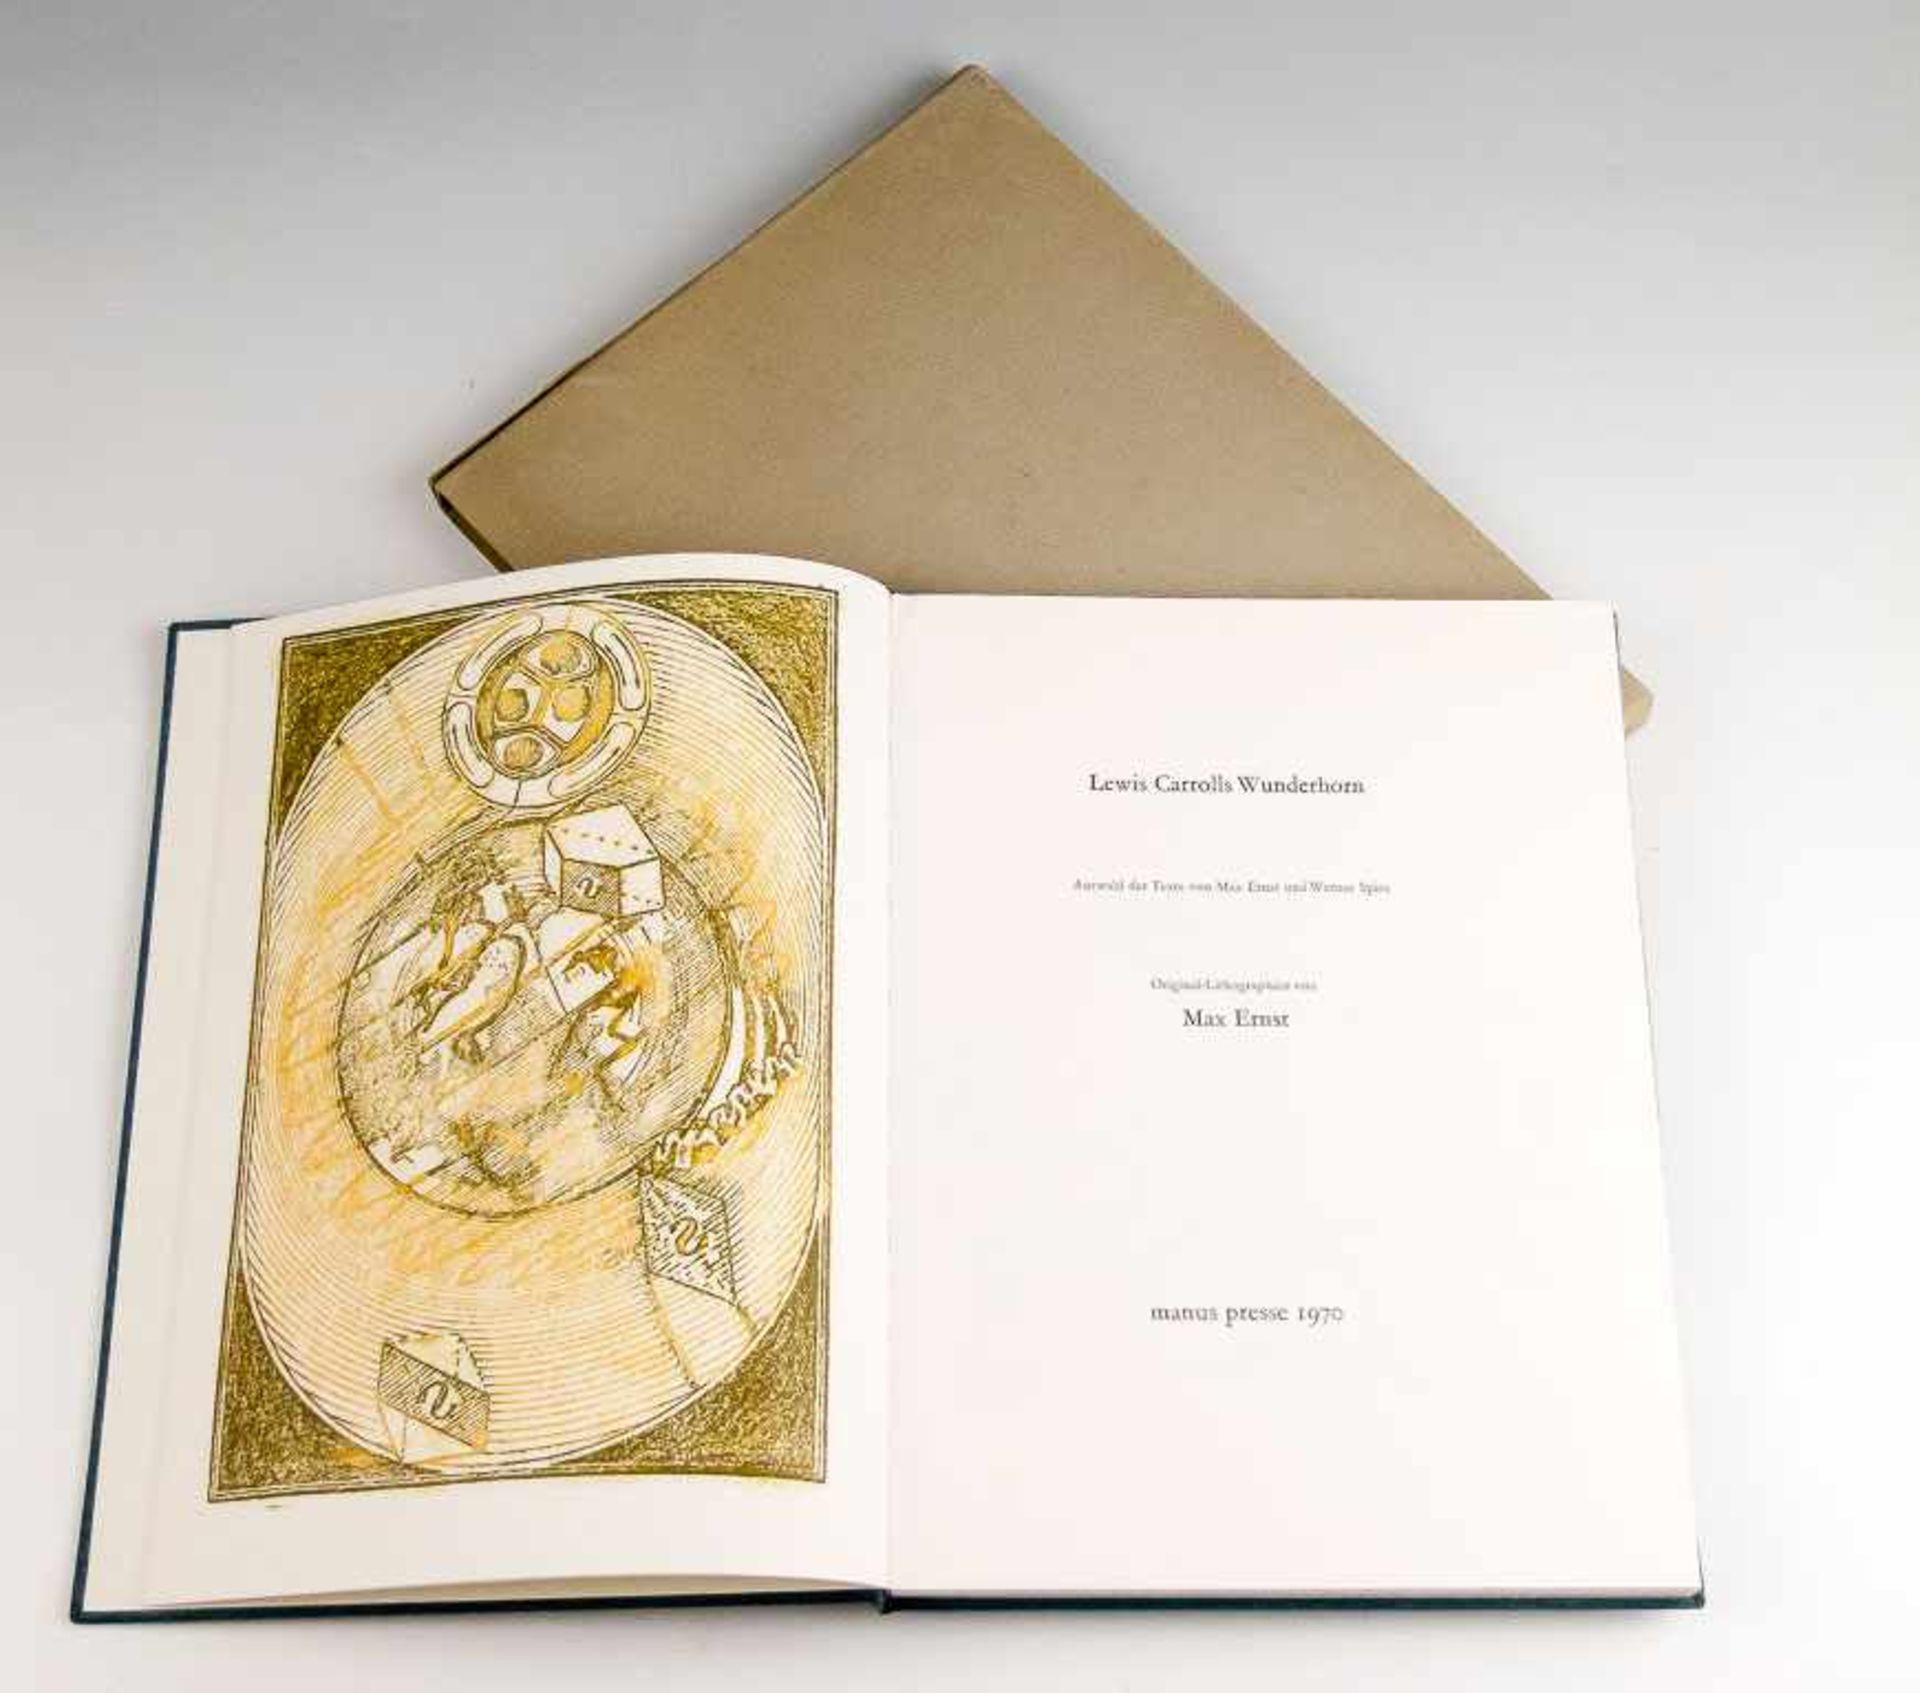 Ernst, Max (Brühl/Rhl., Paris 1891-1976) "Lewis Carrolls Wunderhorn". Buch mit einer Textauswahl von